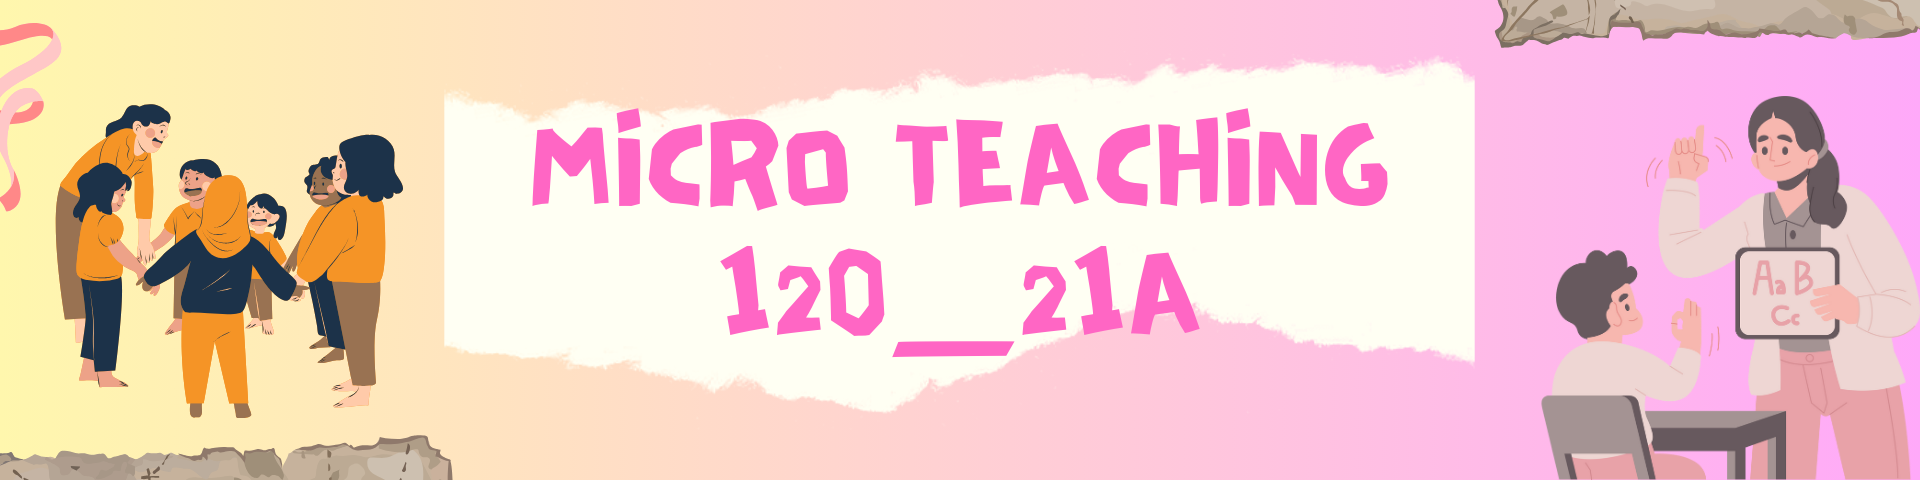 Micro Teaching_120_21A